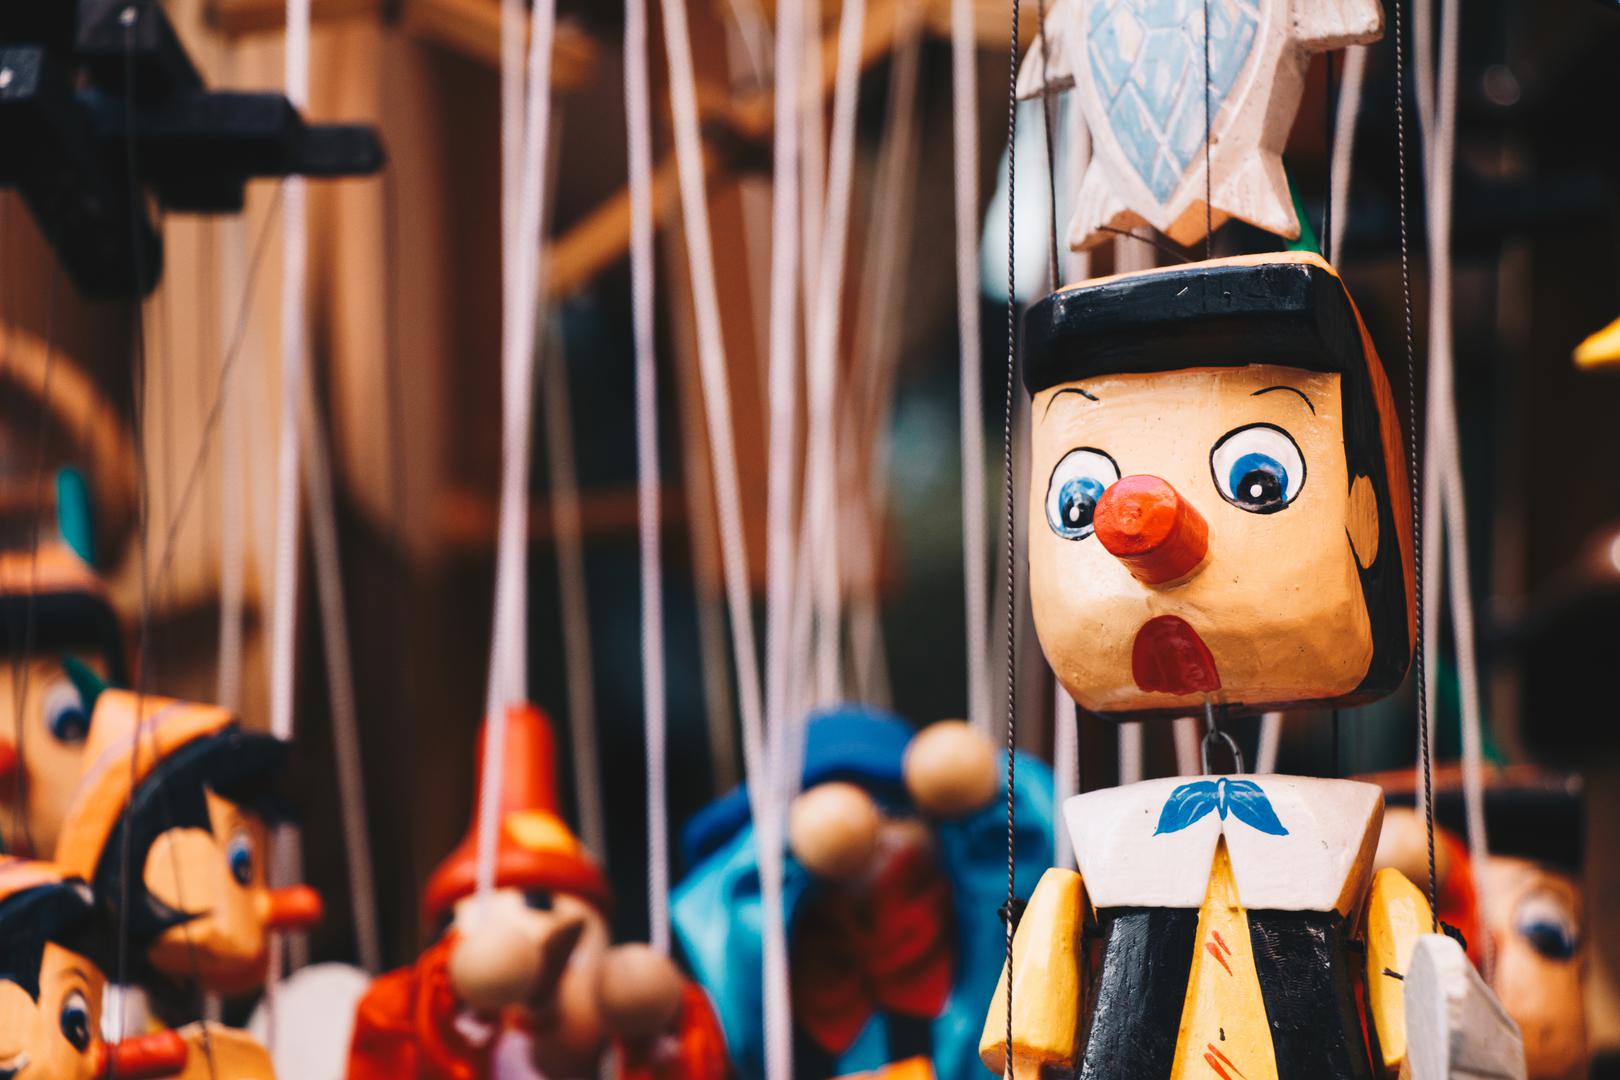 6. Pinocchio je Talijan: Priča o Pinocchiu, koju obično povezujemo s Disneyevom pričom, nastala je u Firenci pričom koju je napisao Carlo Collodi 1826. Knjiga sadrži toskanski dijalekt, nastao iz latinskog, koji je postao moderni talijanski tijekom razdoblja renesanse kada je Toskana bila trgovačko središte za ostatak zemlje.